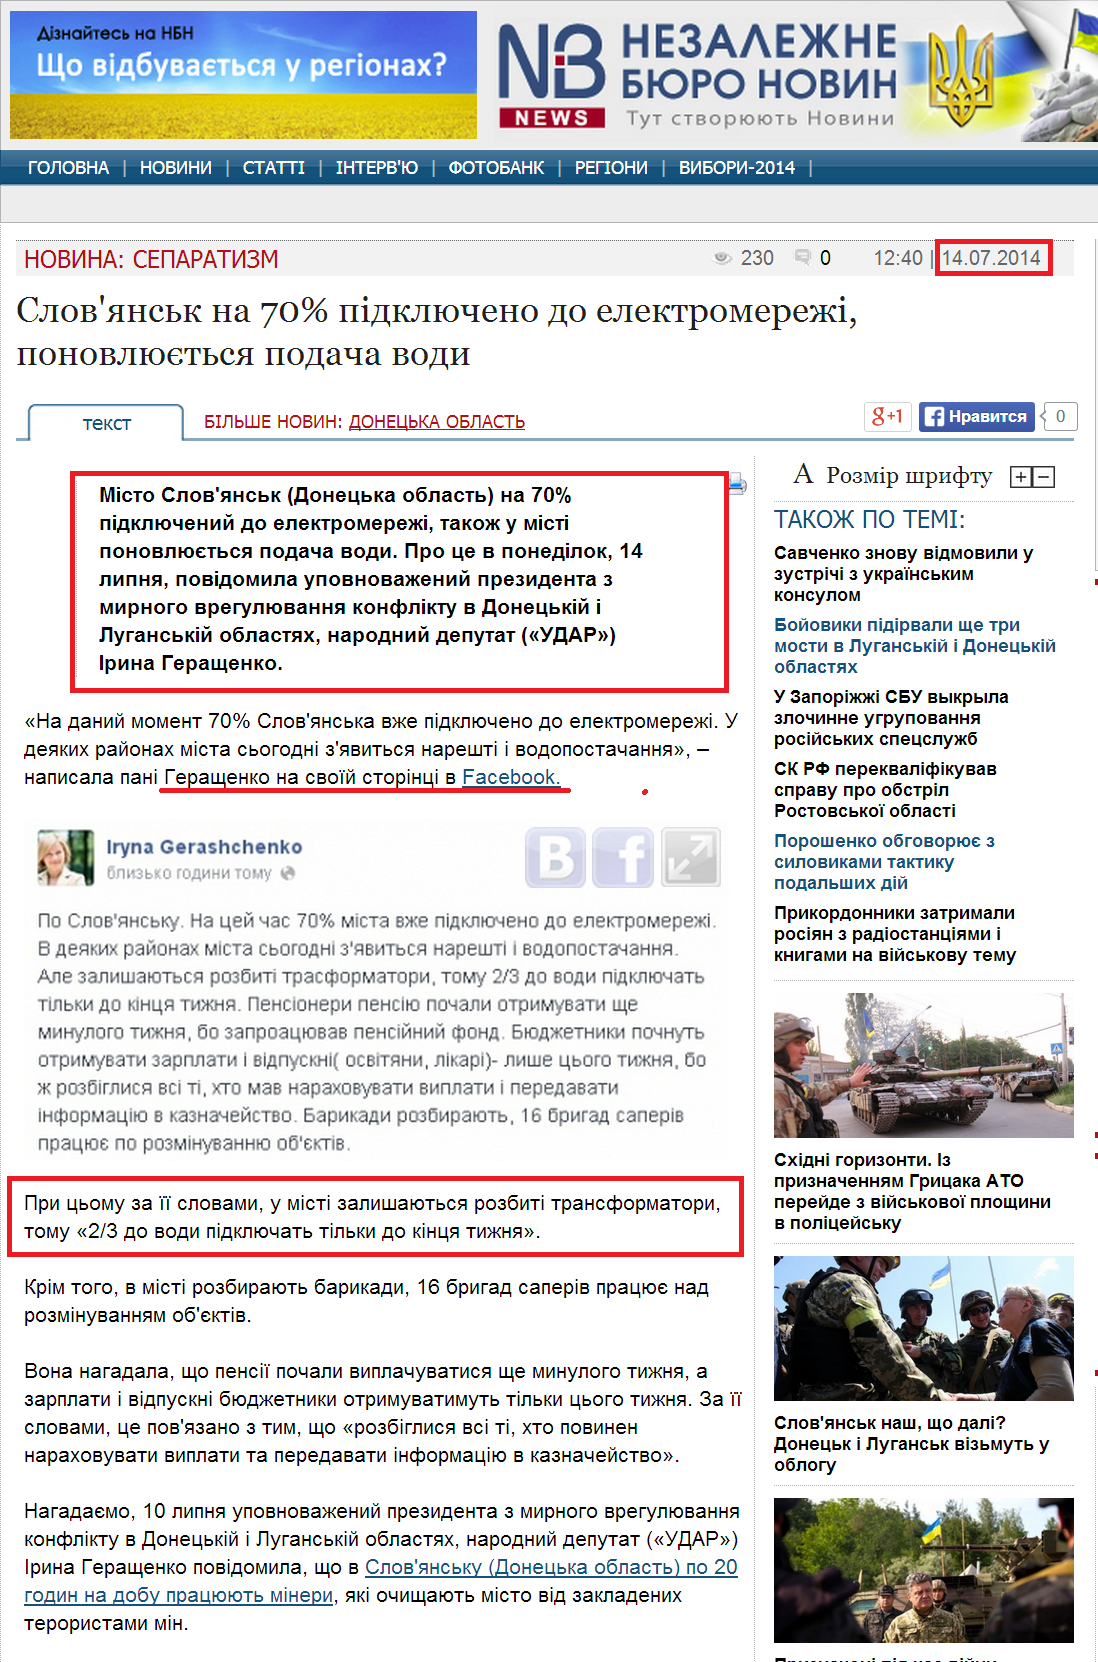 http://nbnews.com.ua/ua/news/126986/